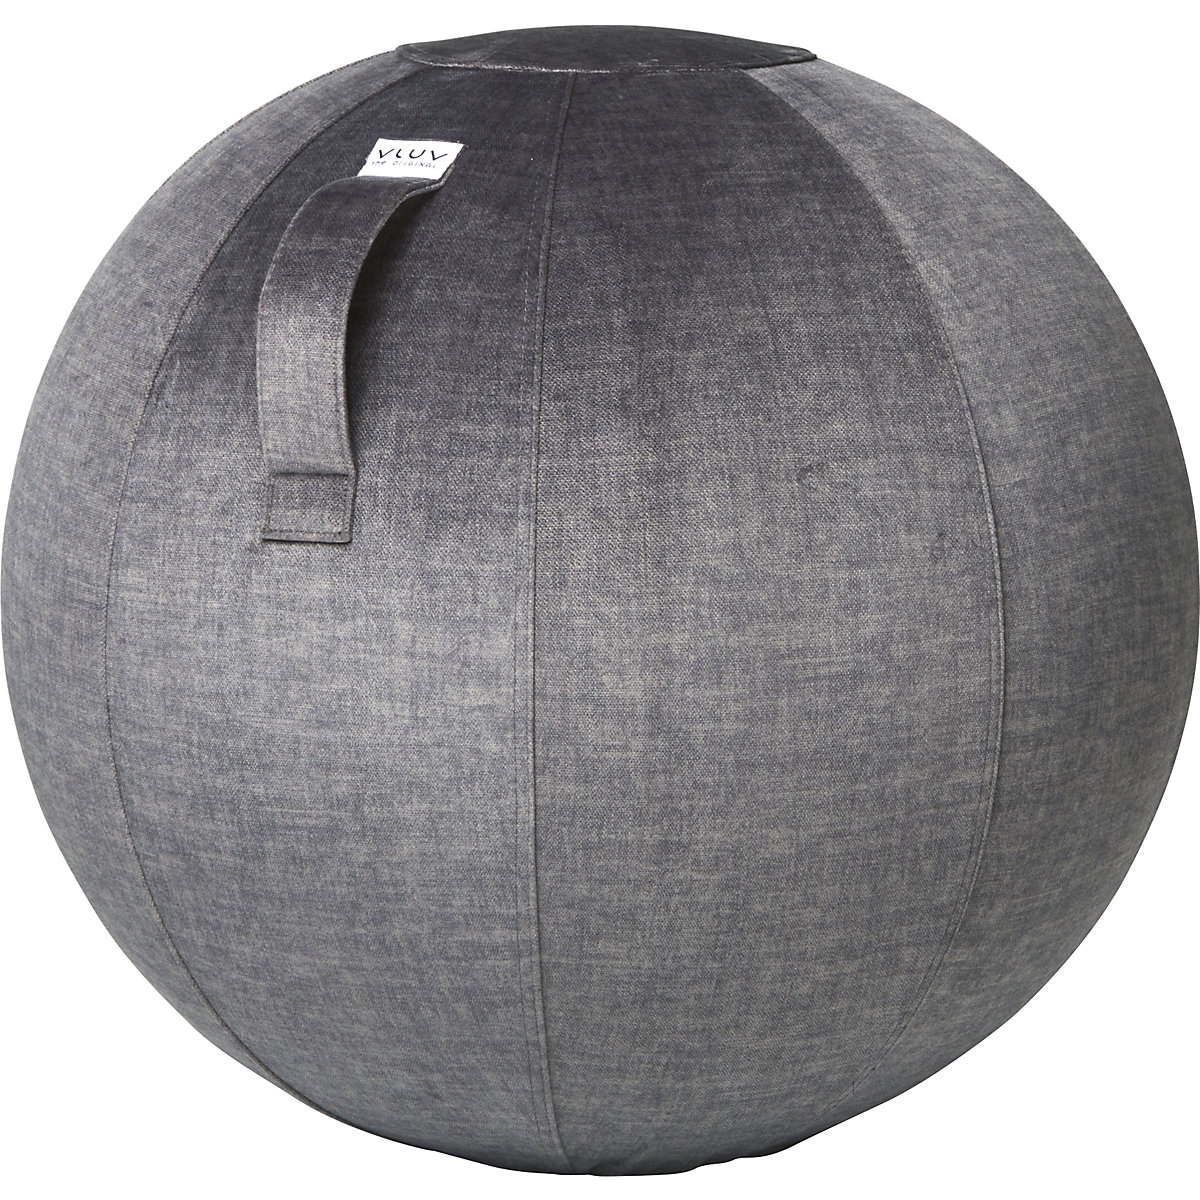 VLUV VARM Sitzball, aus Samtstoff, 600 – 650 mm, anthrazit